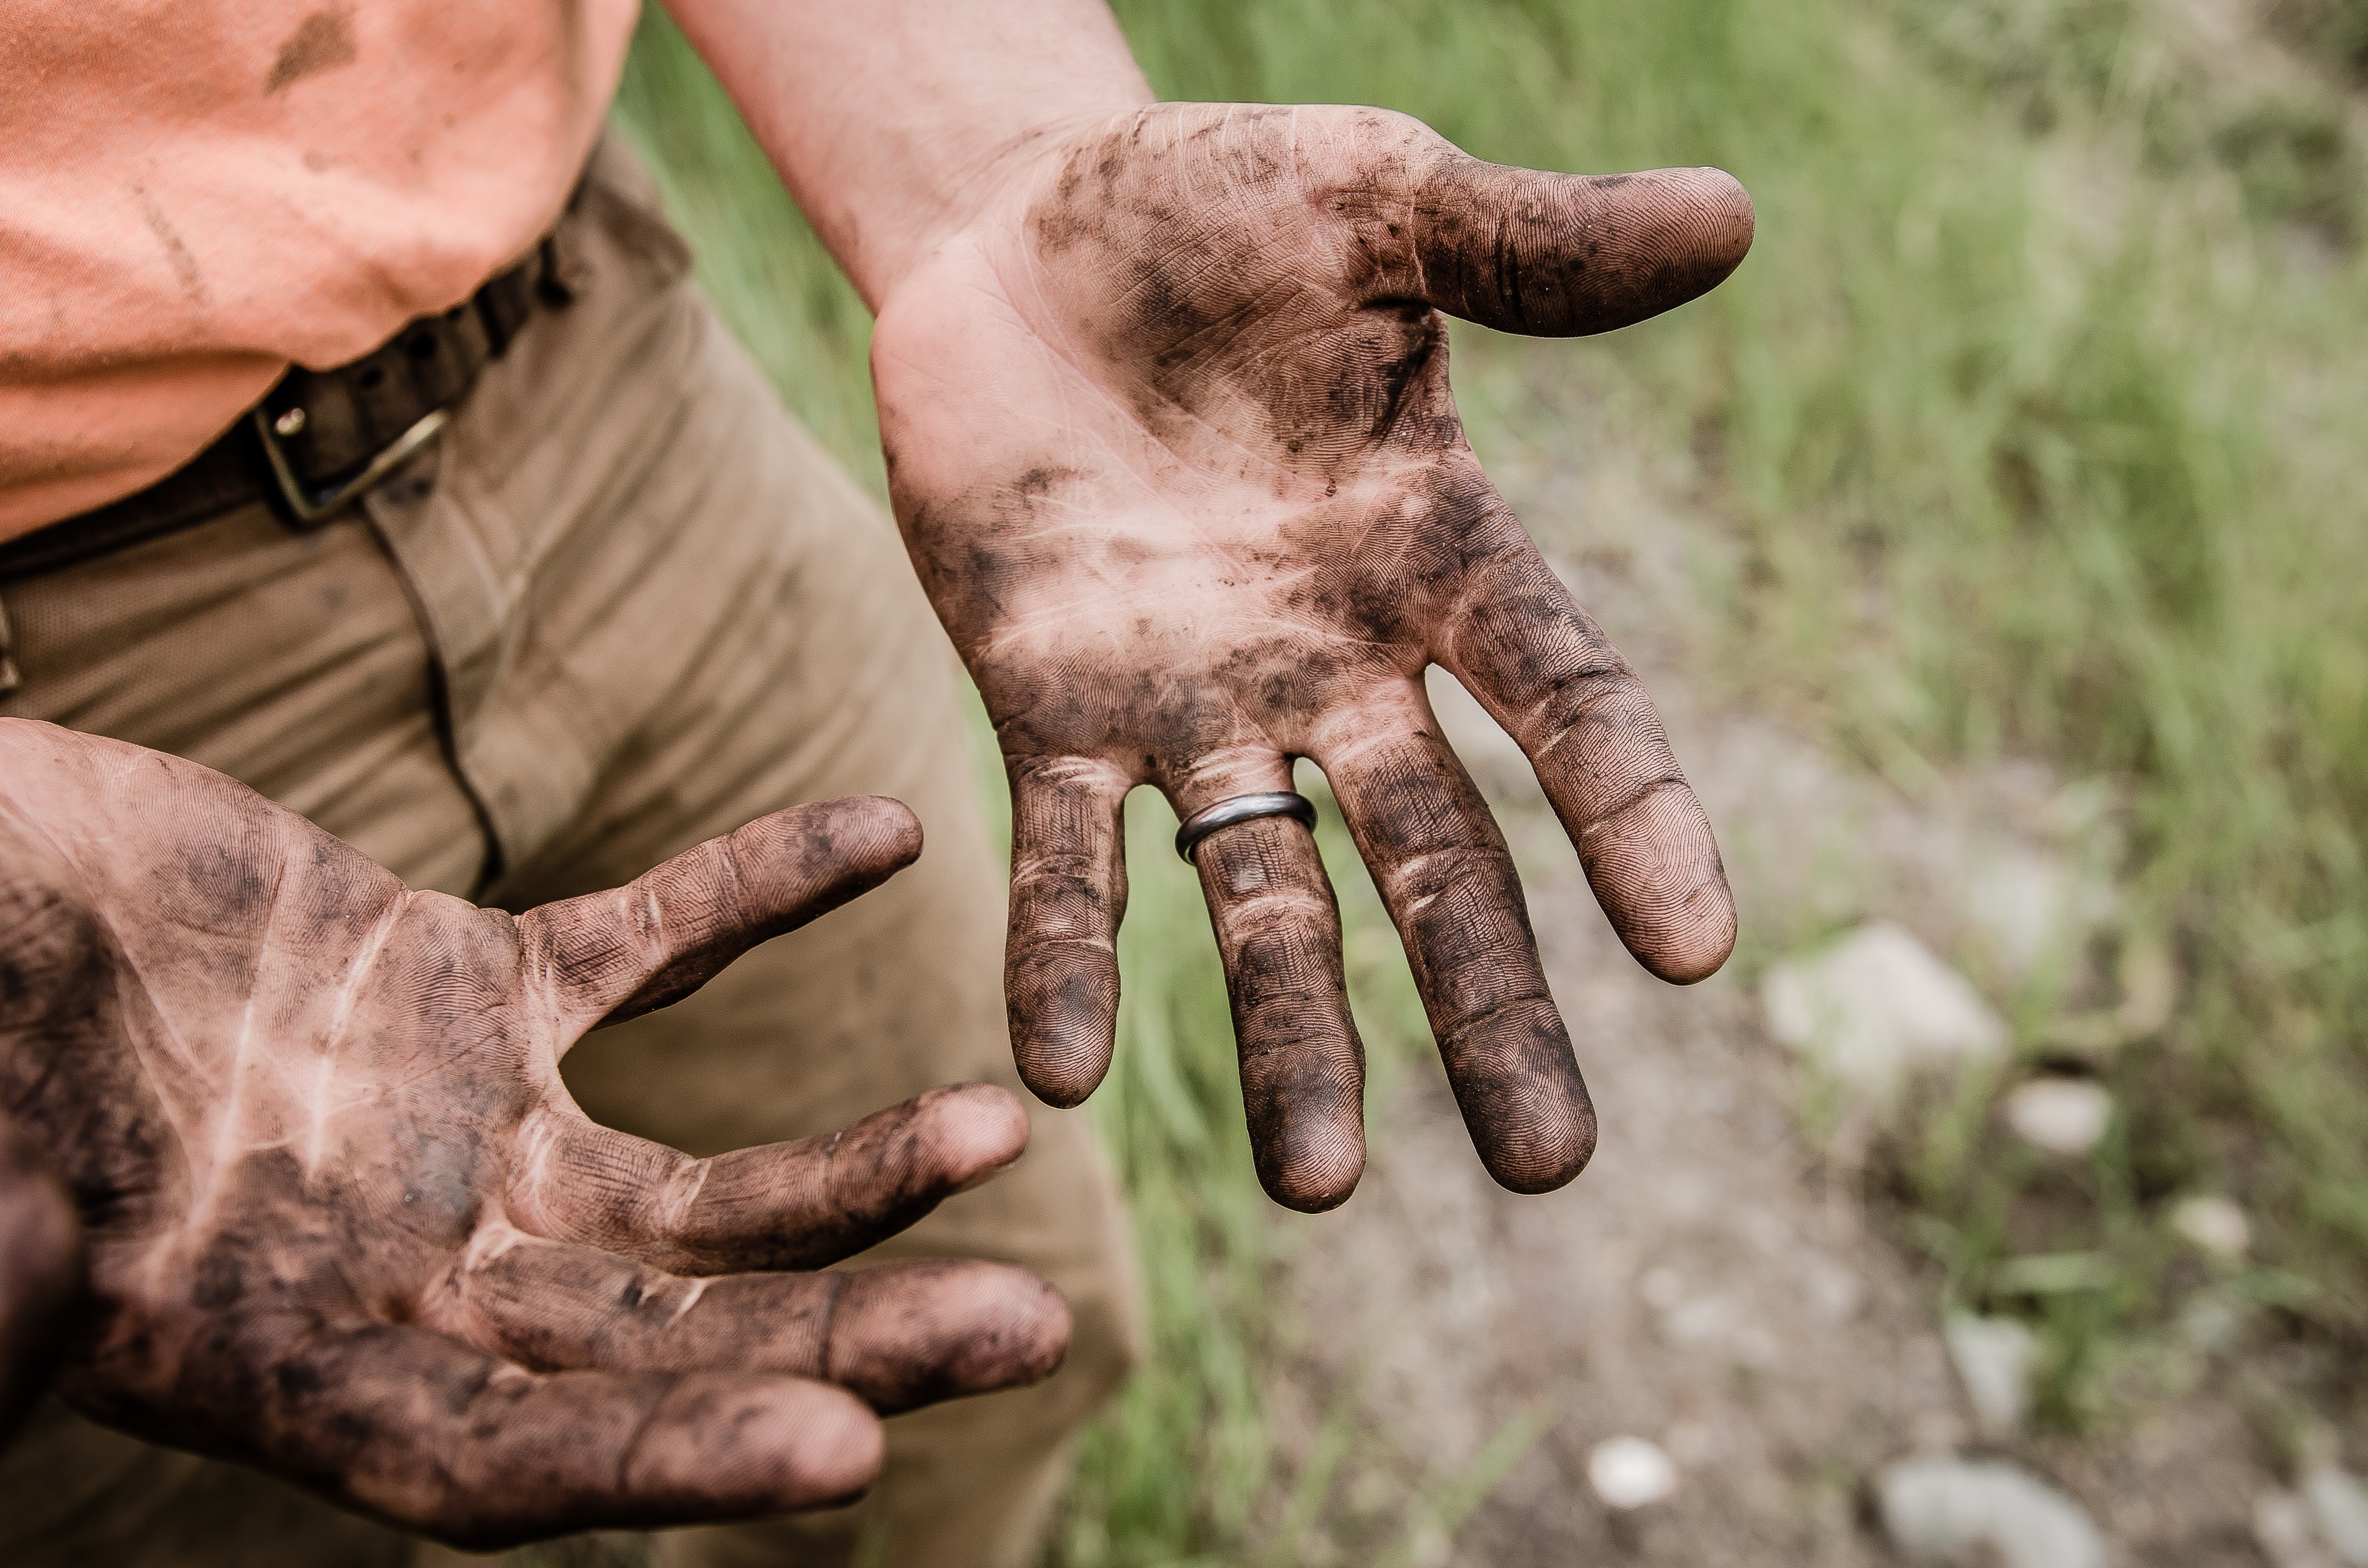 Von Arbeit schmutzige Hände: Haben sich Reiche ihr Vermögen hart erarbeitet?